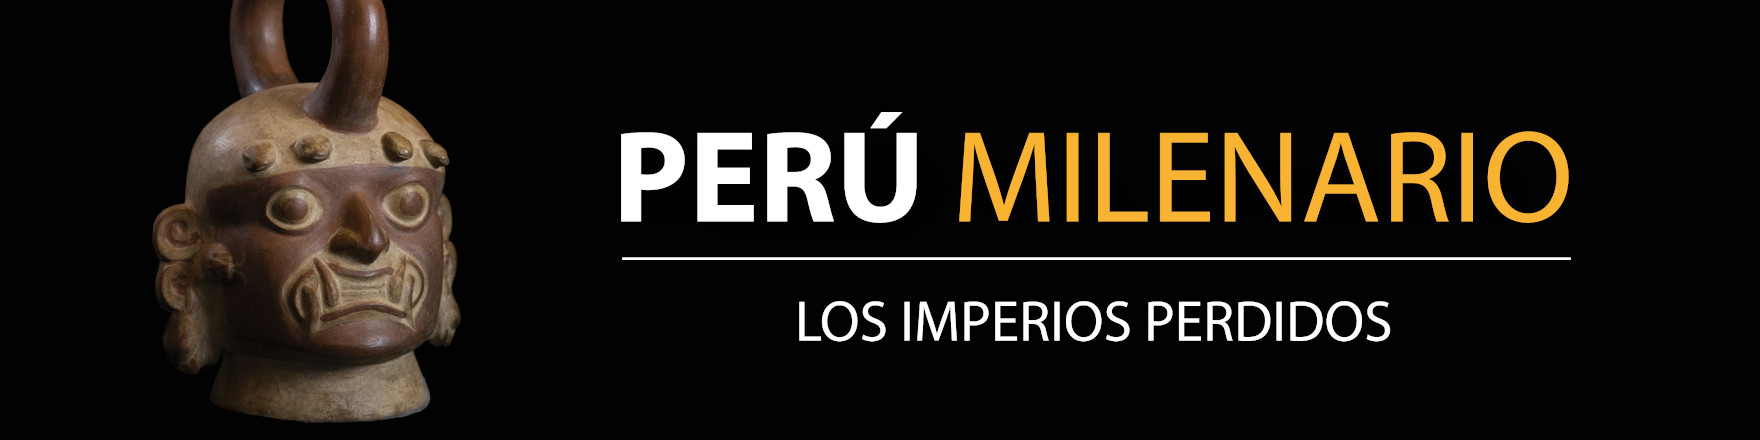 Exposición - Perú Milenario